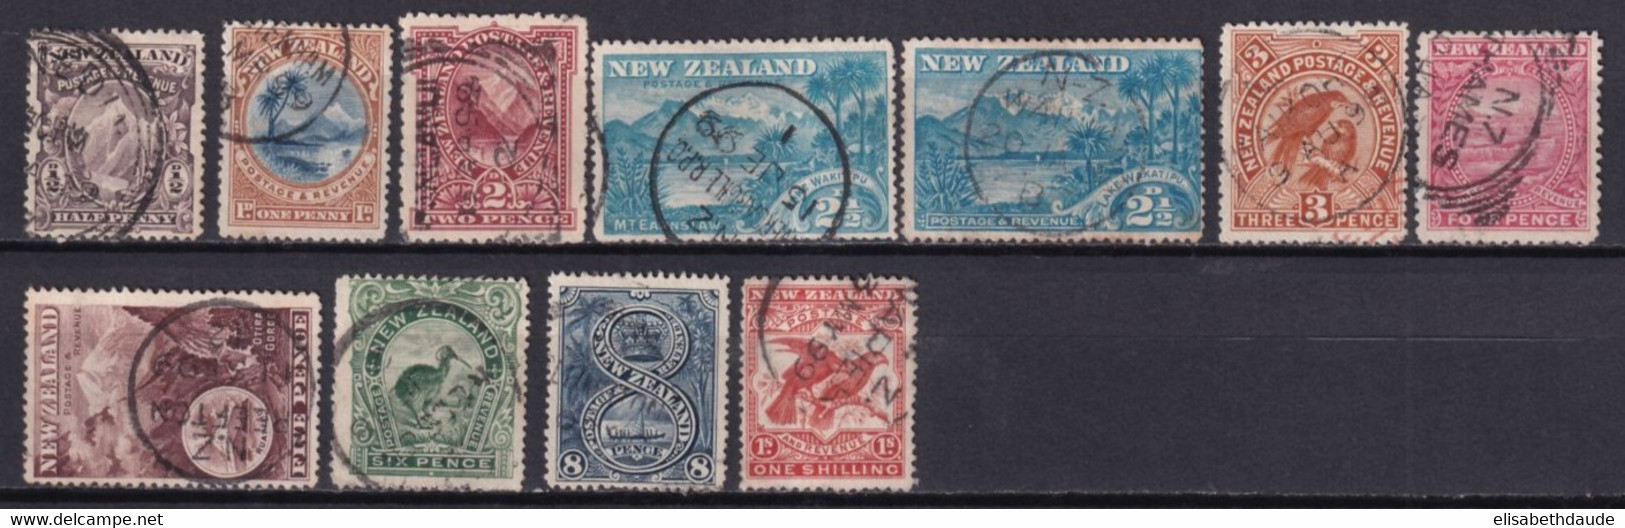 NEW ZEALAND - 1898 - YVERT N° 70/78+80 OBLITERES - COTE = 230 EUR. - - Usati